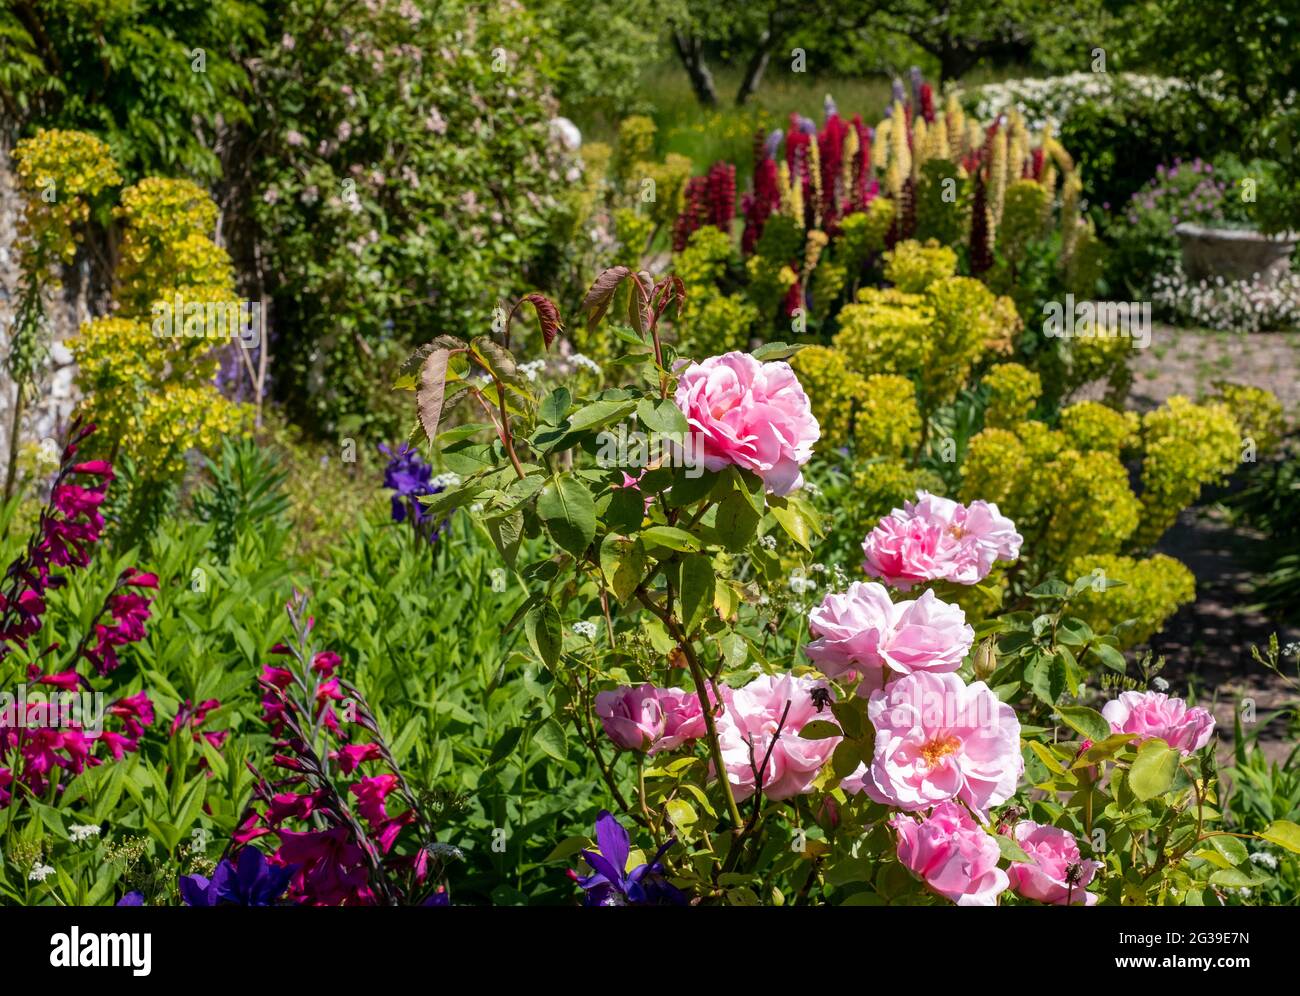 Superbes fleurs et feuillages, photographiés à la Maison de Monk, dans le jardin de la maison de Woolf en Virginie, à Rodmell, dans l'est du Sussex, au Royaume-Uni. Banque D'Images